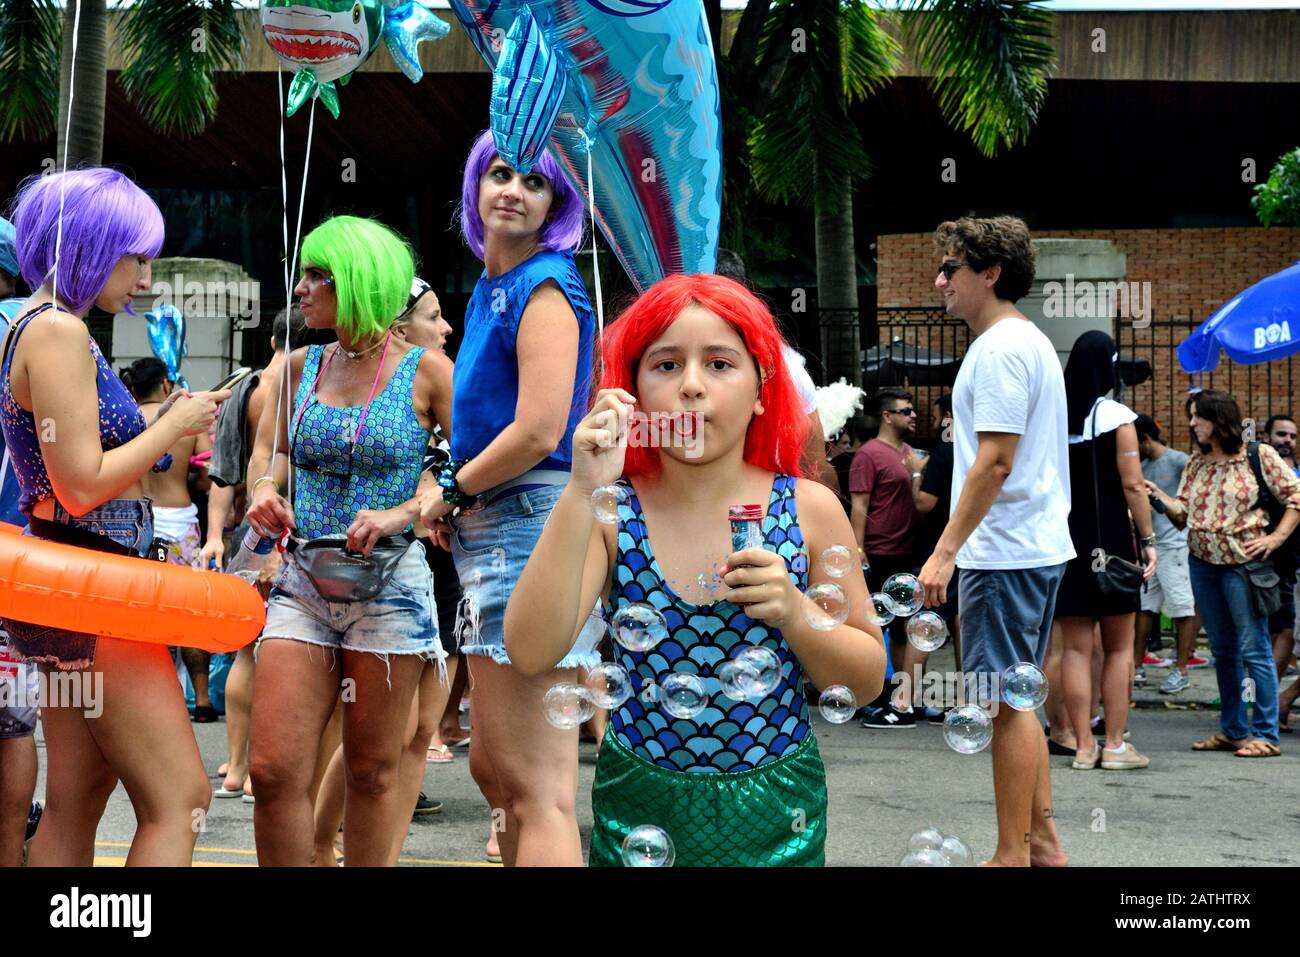 Carnevale di strada, Sud America, Brasile - 17 febbraio 2019: Una giovane ragazza fa bolle di sapone durante una festa di strada di Carnevale tenutasi a Rio de Janeiro. Foto Stock